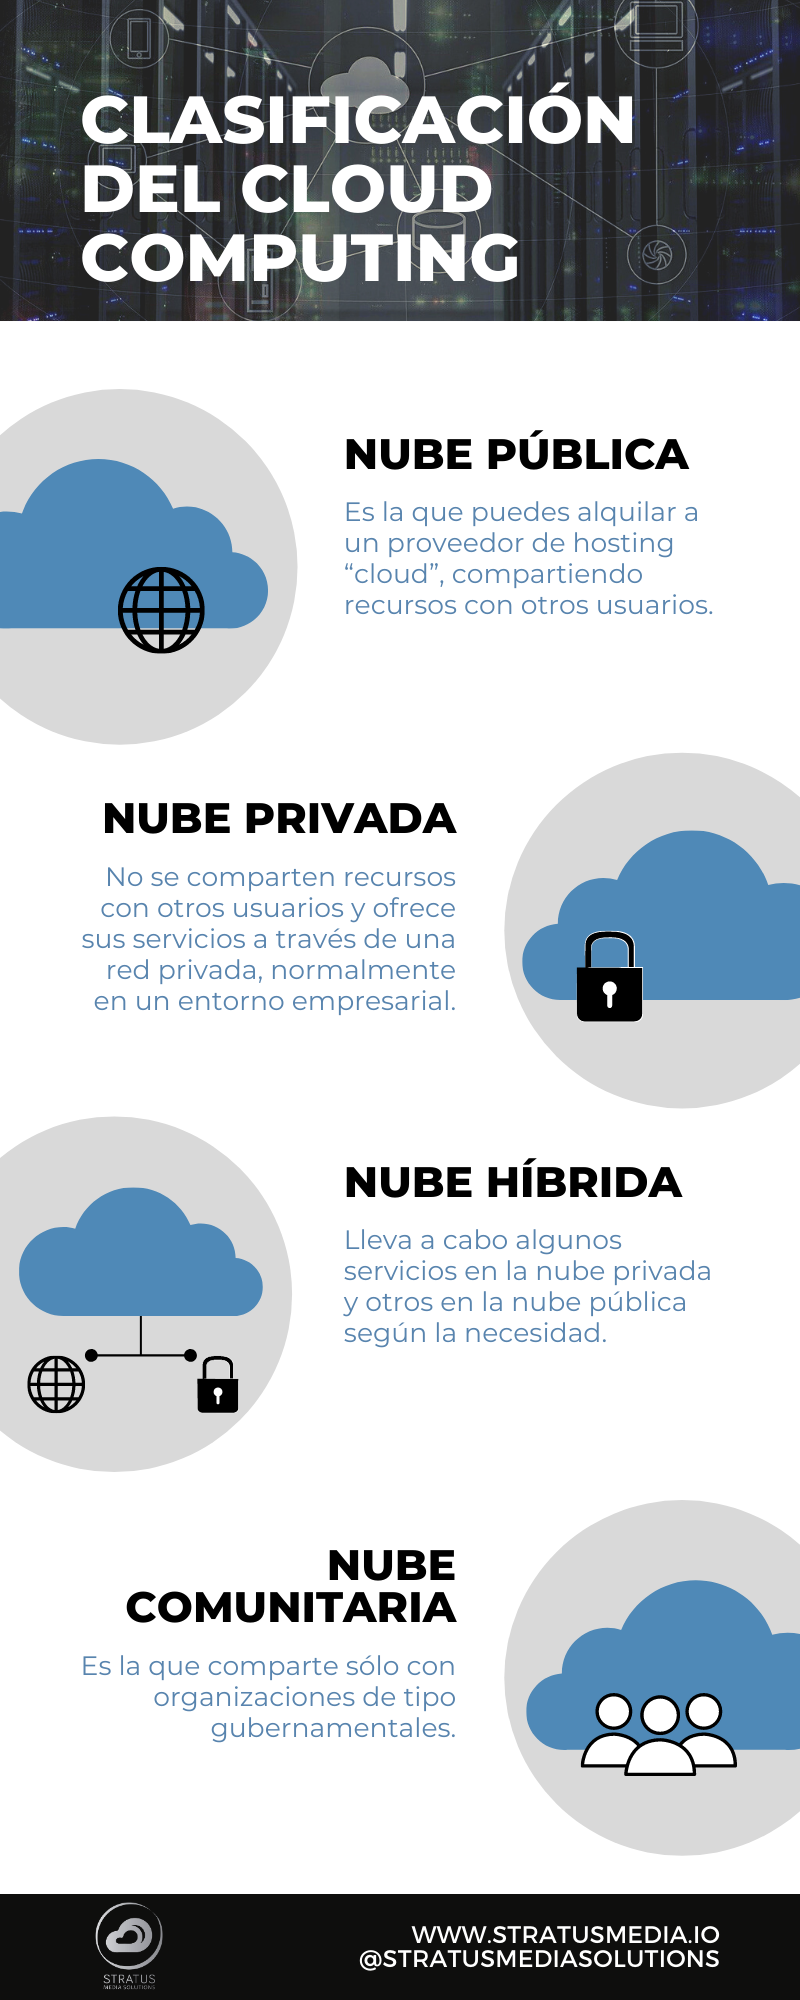 Nube - cloud computing - clasificación